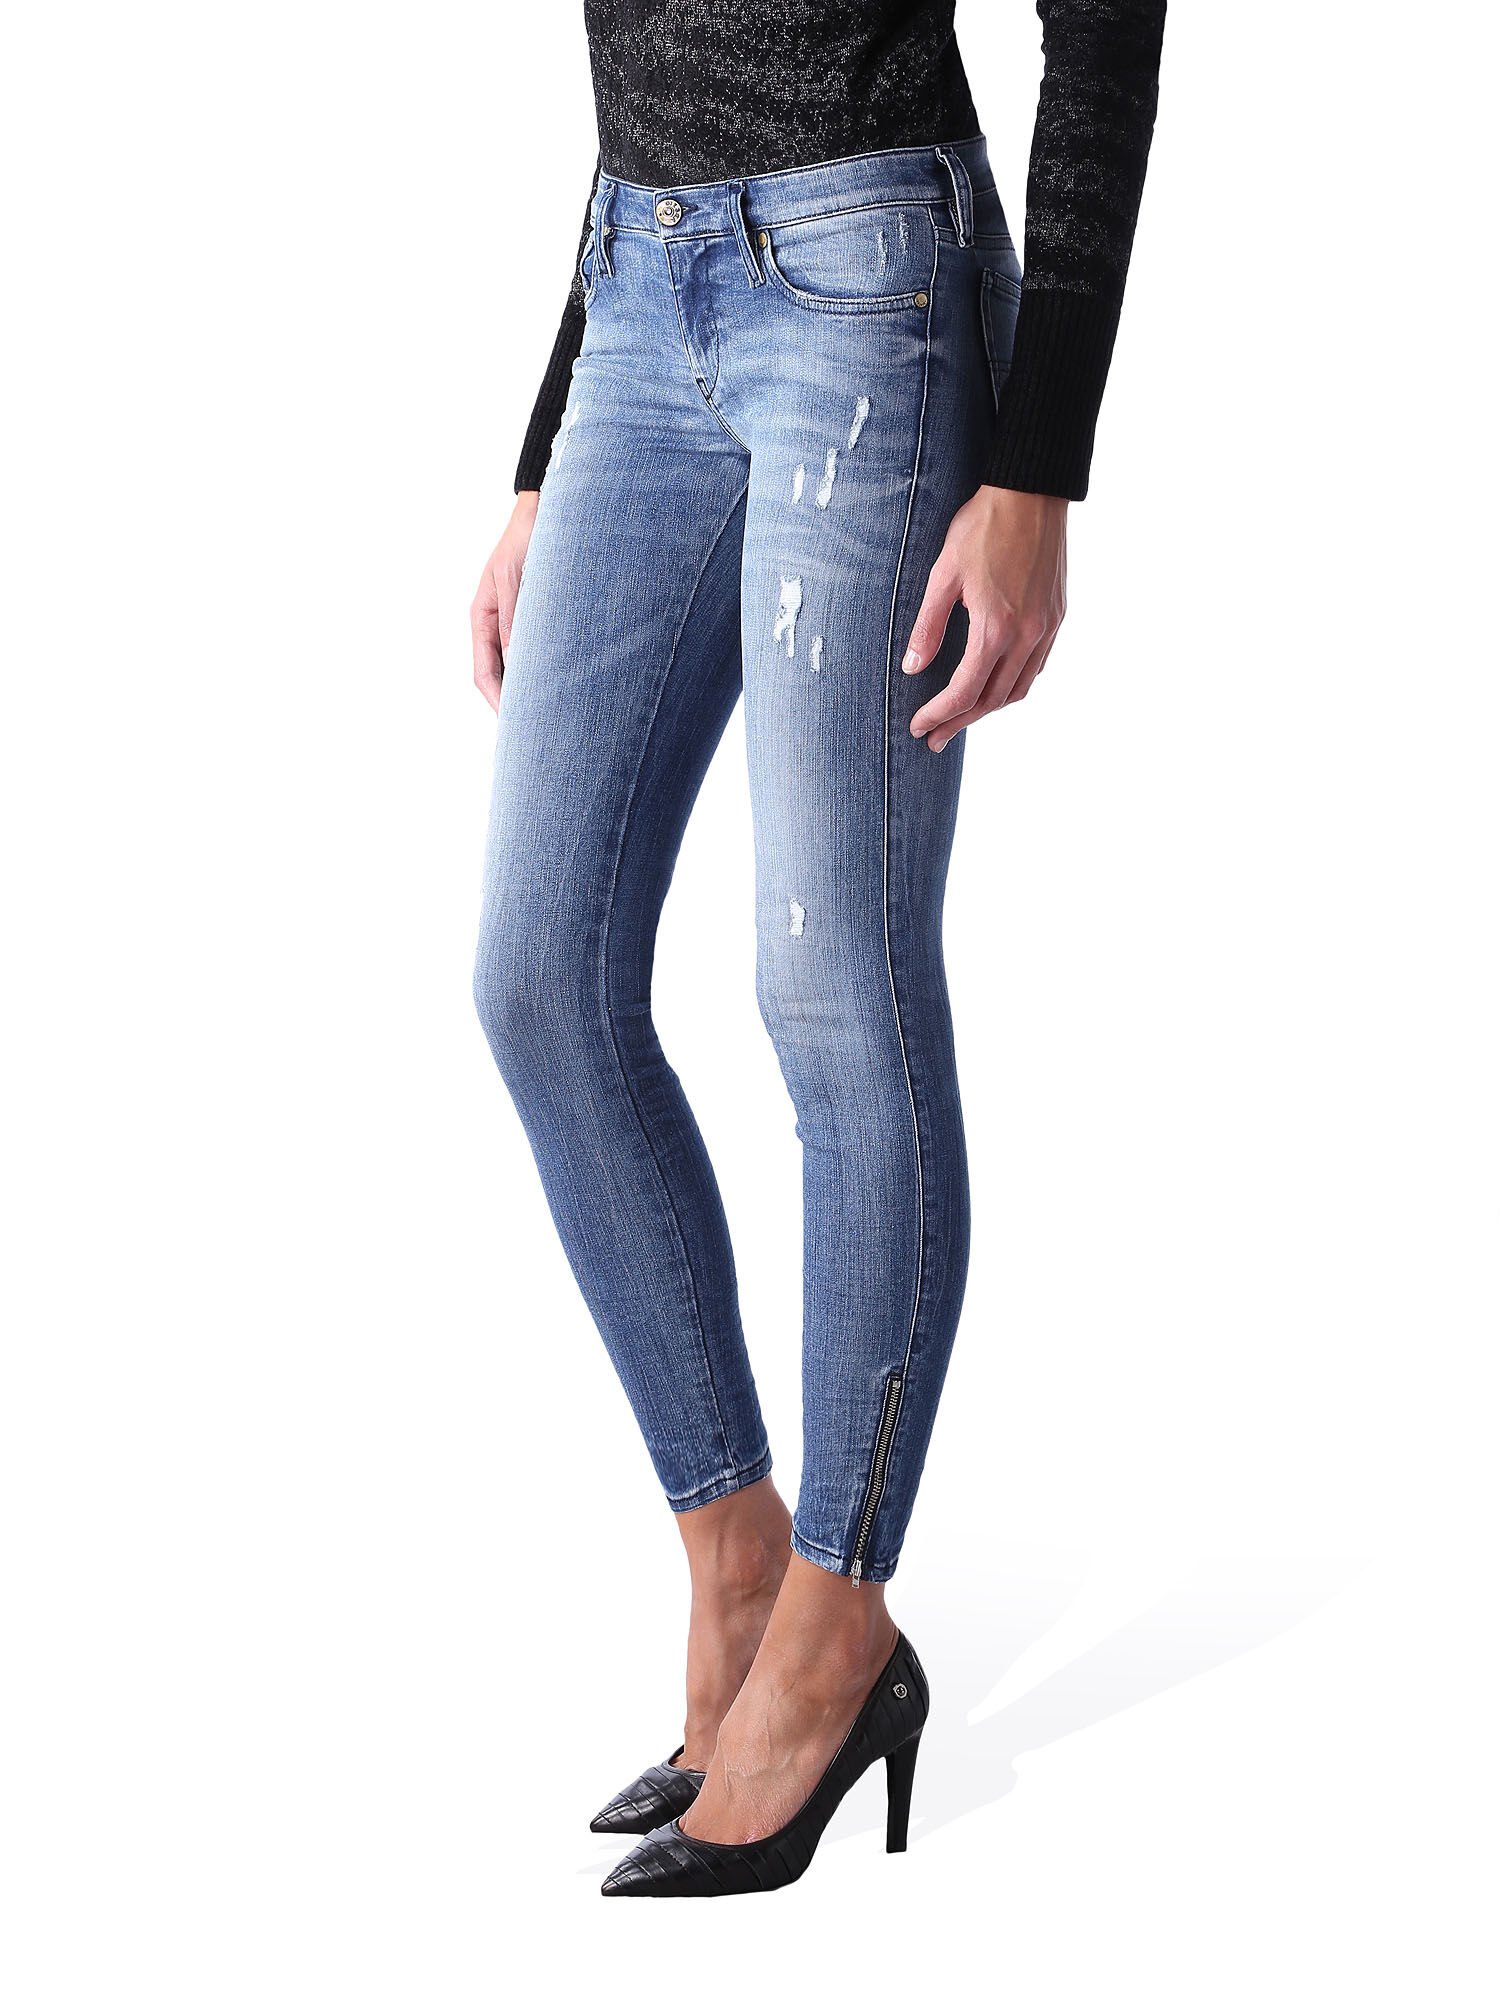 SKINZEE-LOW-ZIP 0847U Jeans Woman | Diesel Online